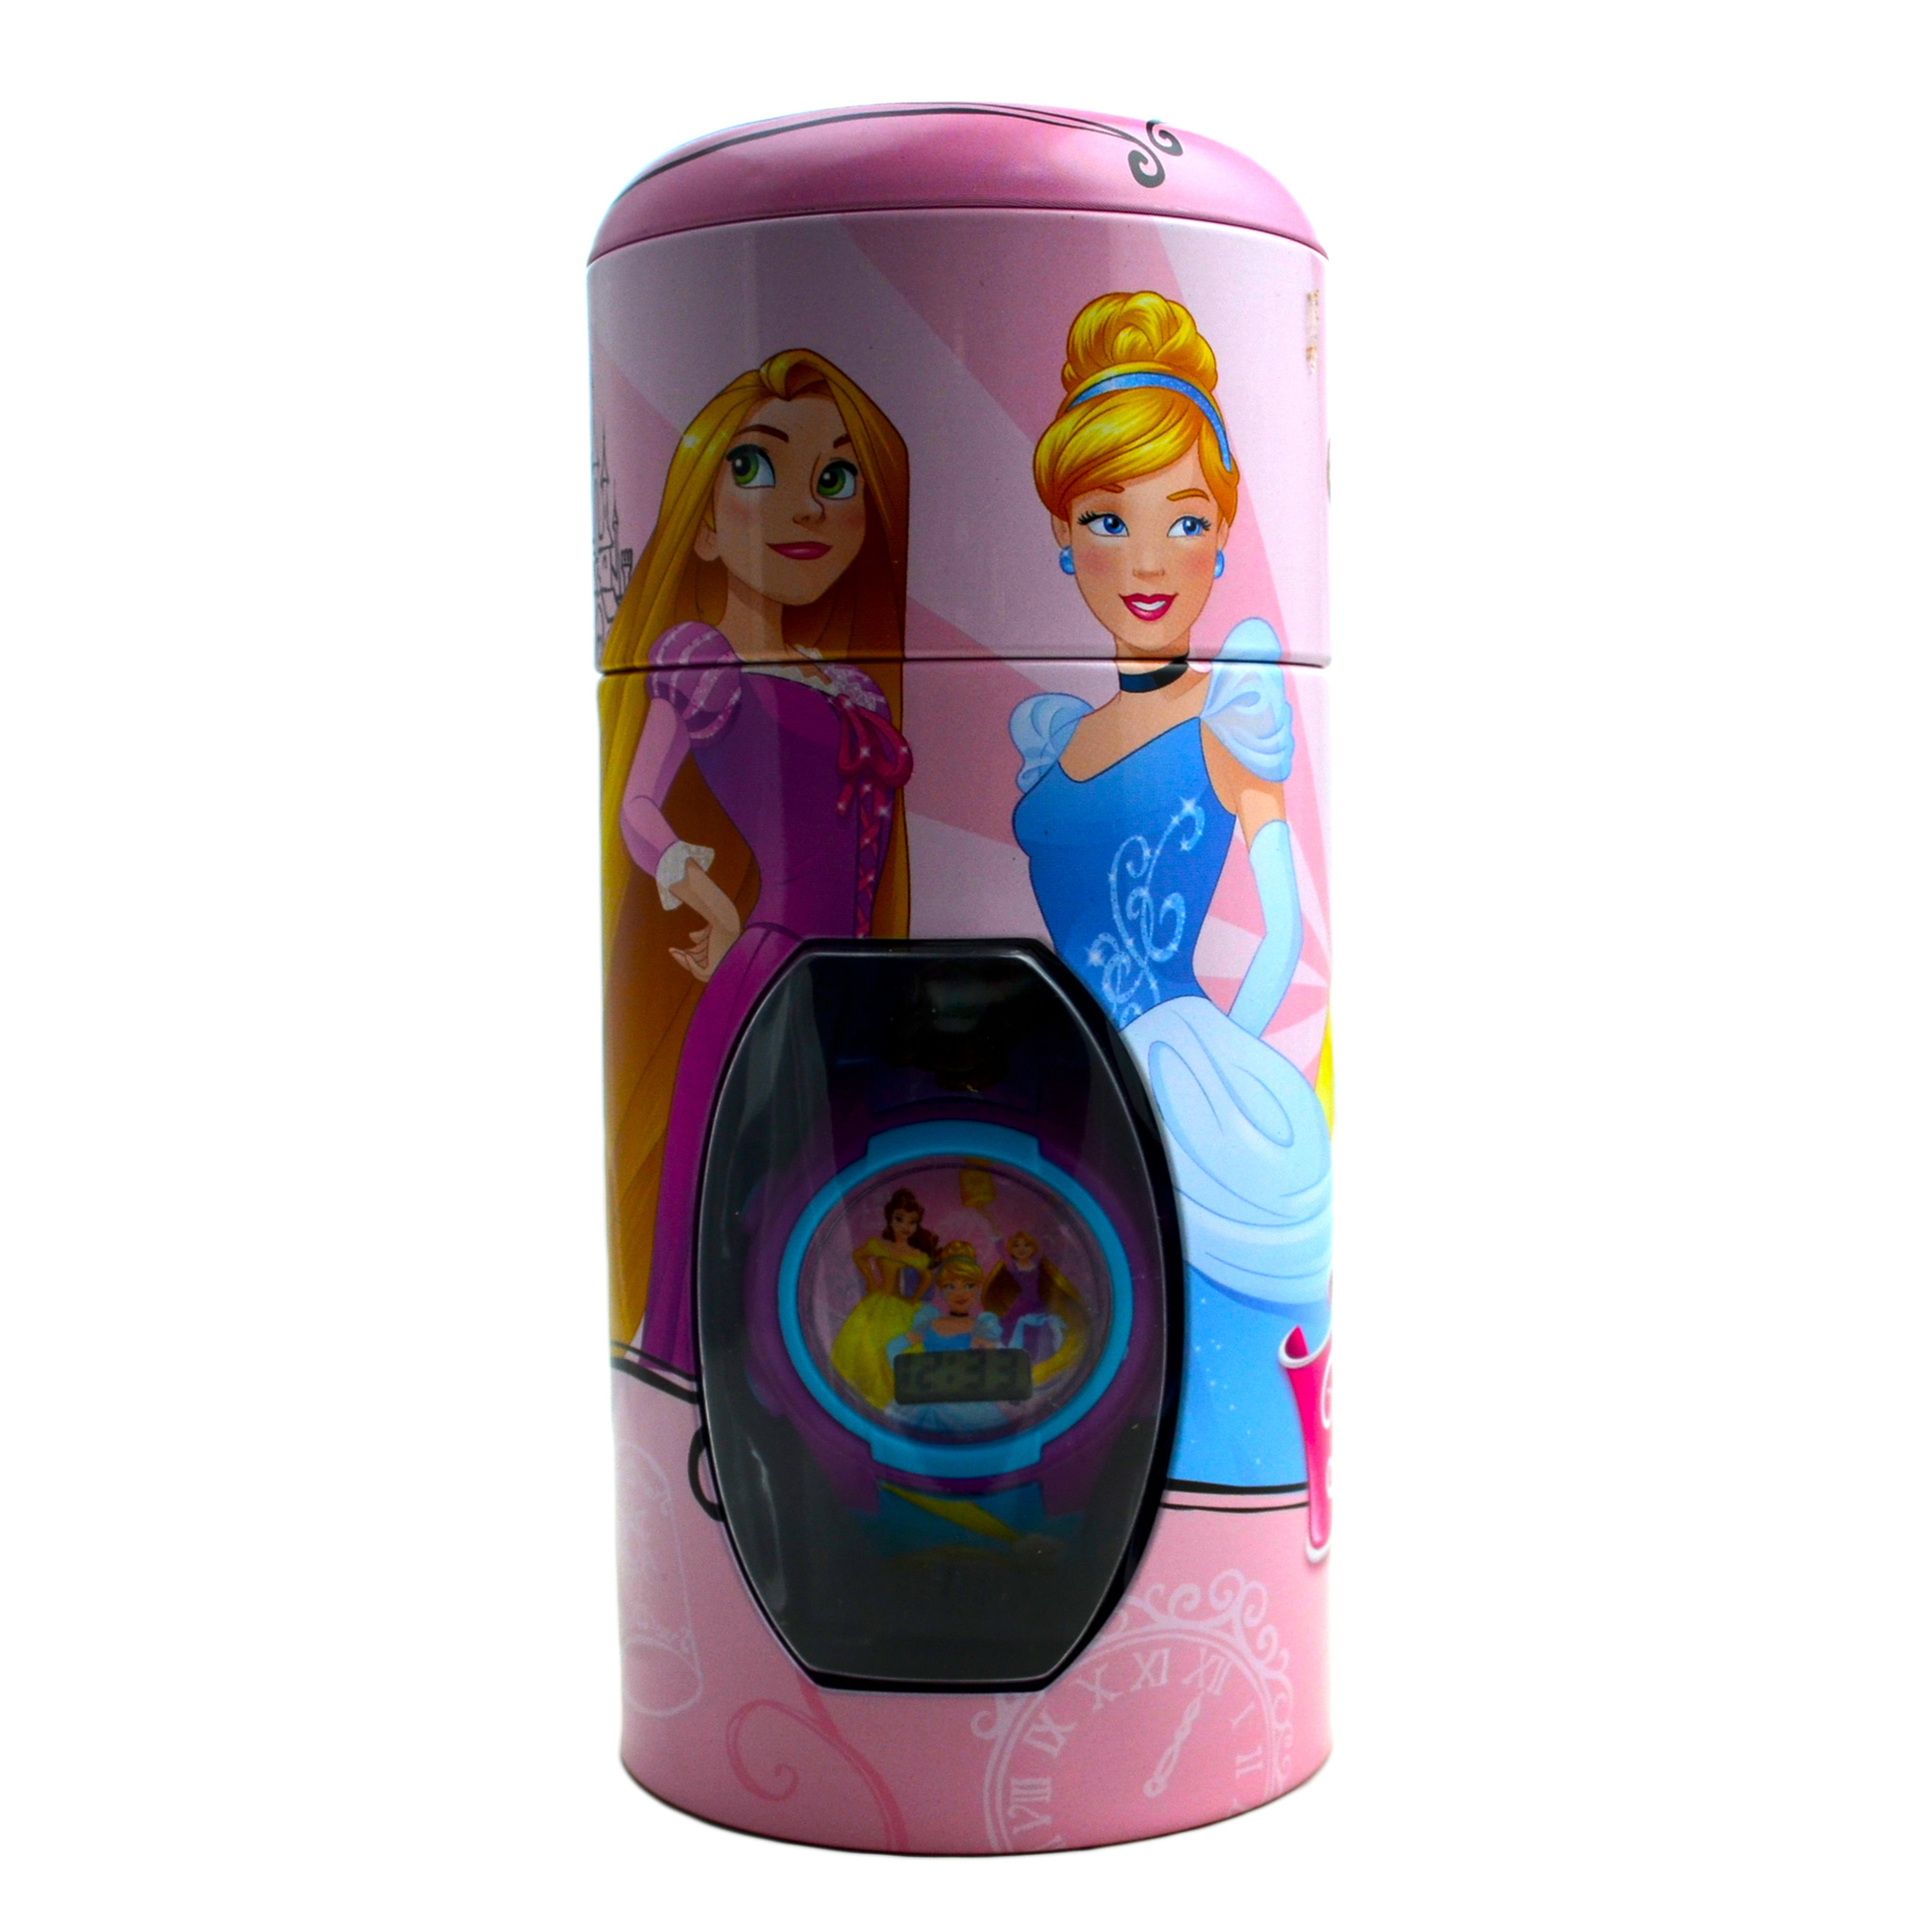 Disney Princess 'Belle & Friends' Girls Digital Metal Tin Gift Wrist Watch